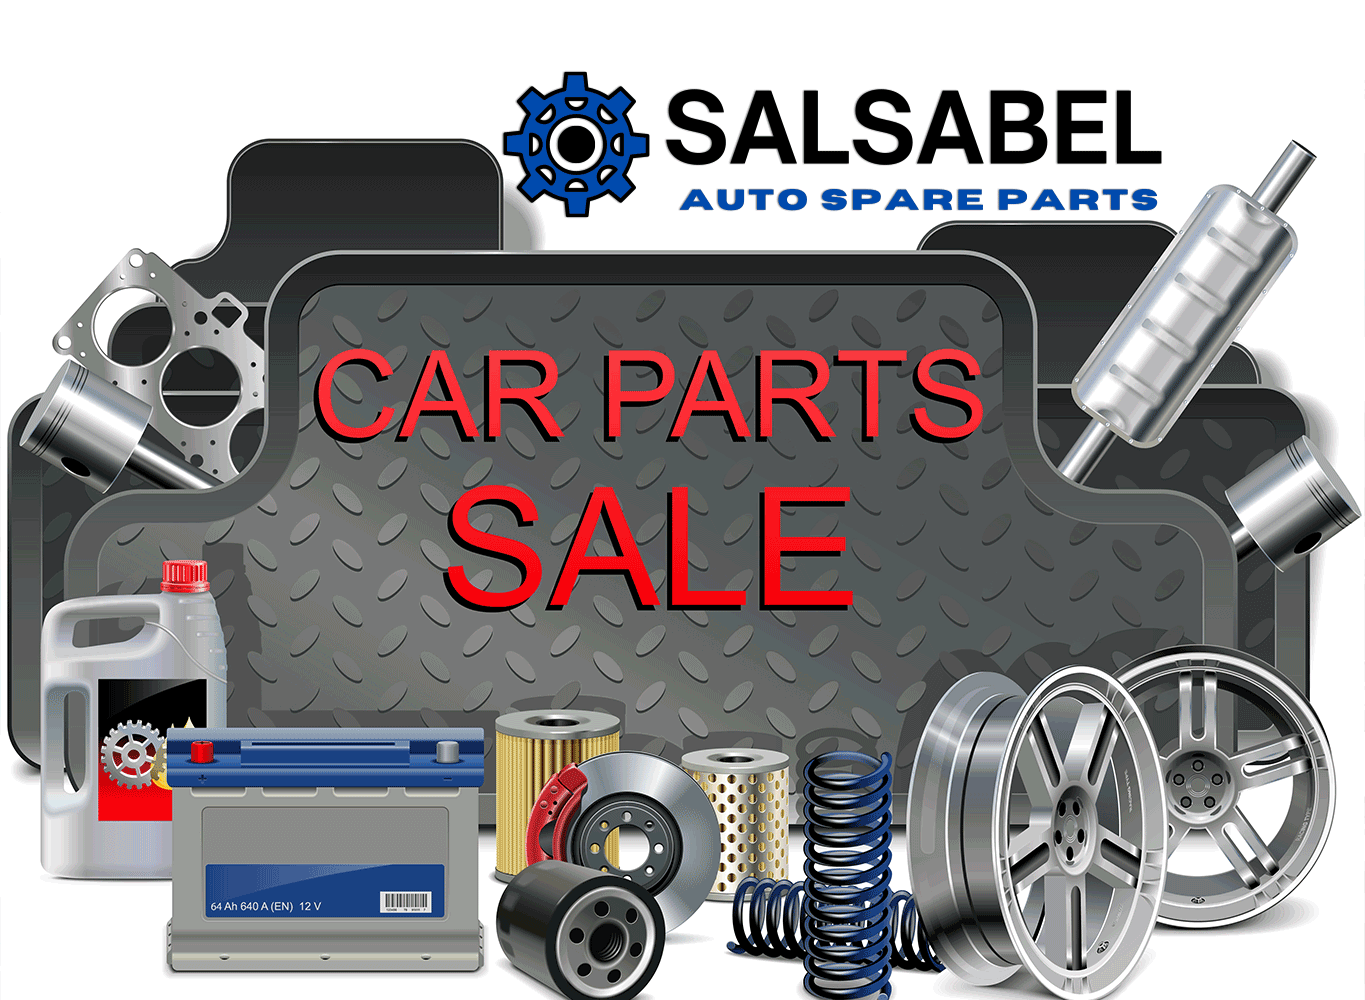 Salsabel-Car-Parts-Spares-Accesoires-Sale